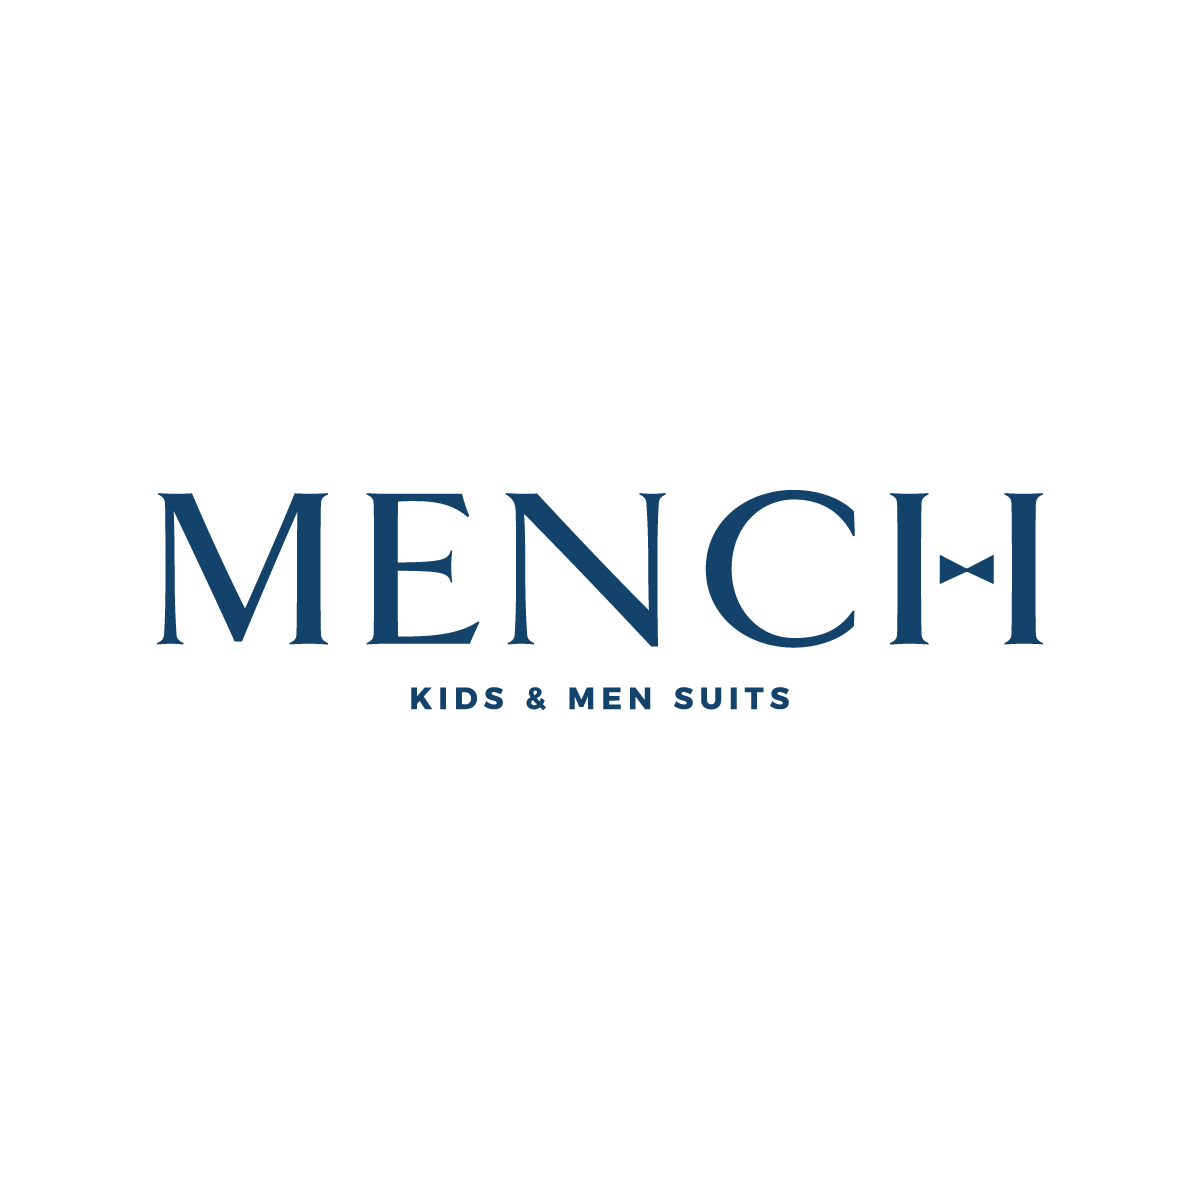 MENCH